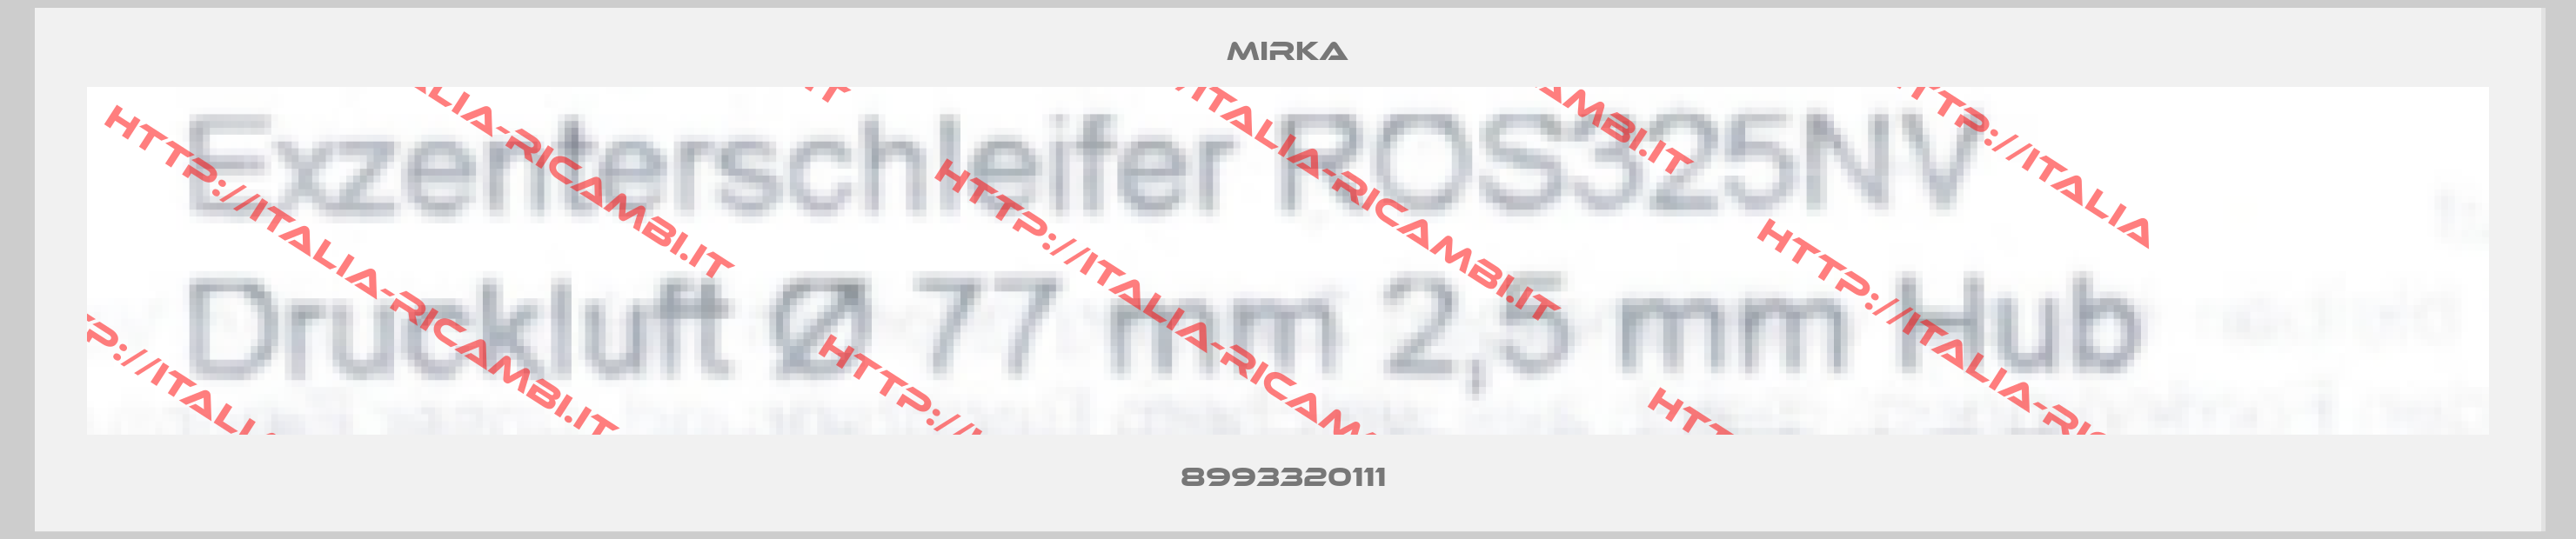 Mirka-8993320111 